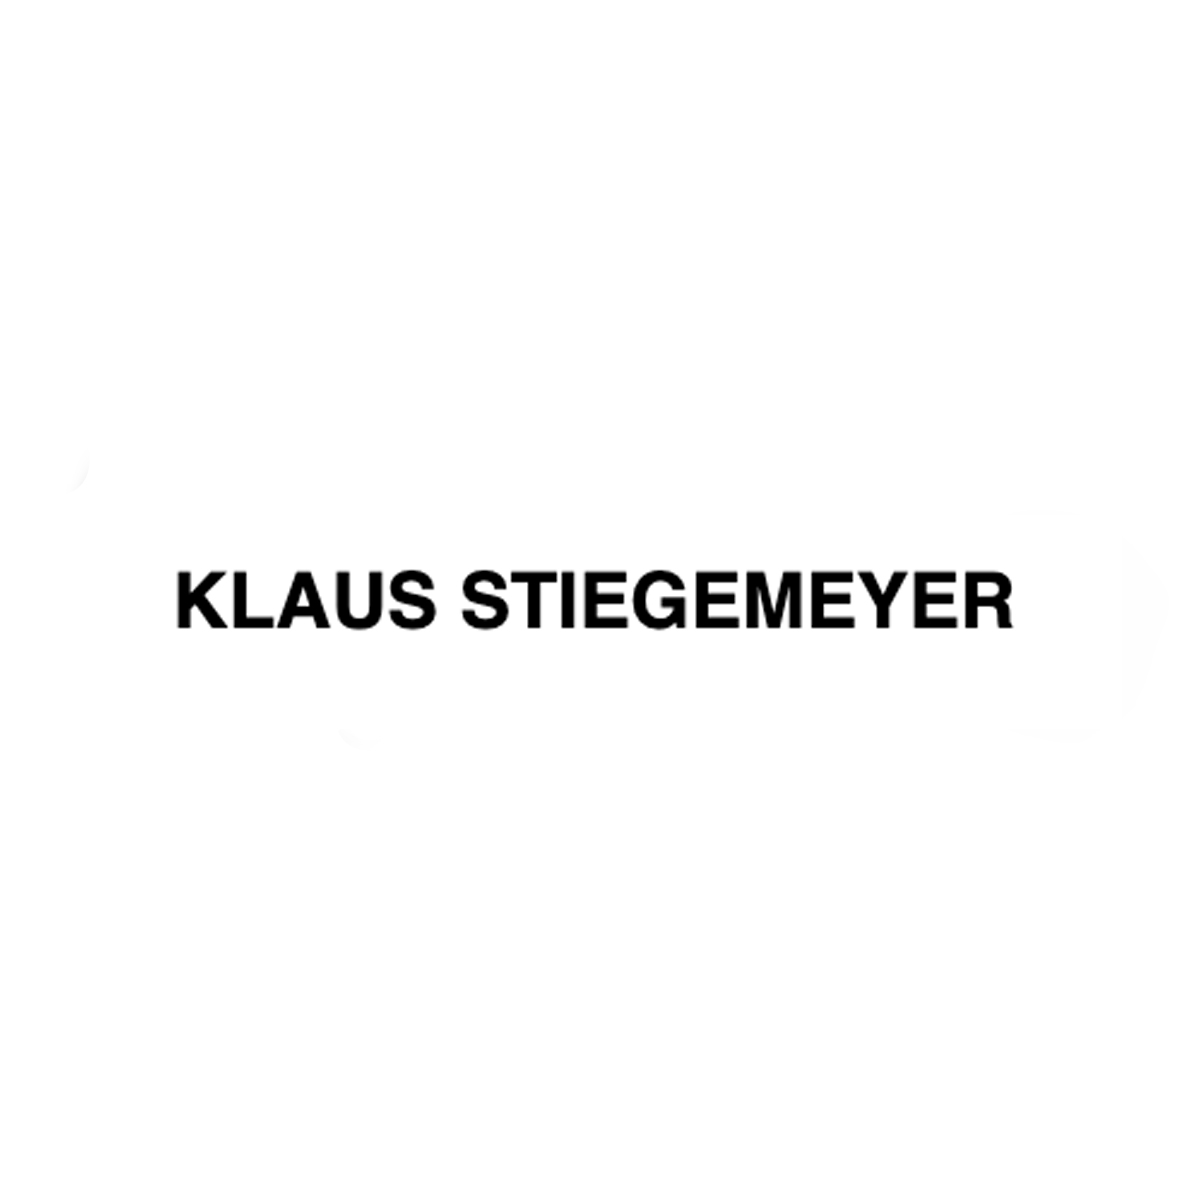 Klaus Stiegemeyer